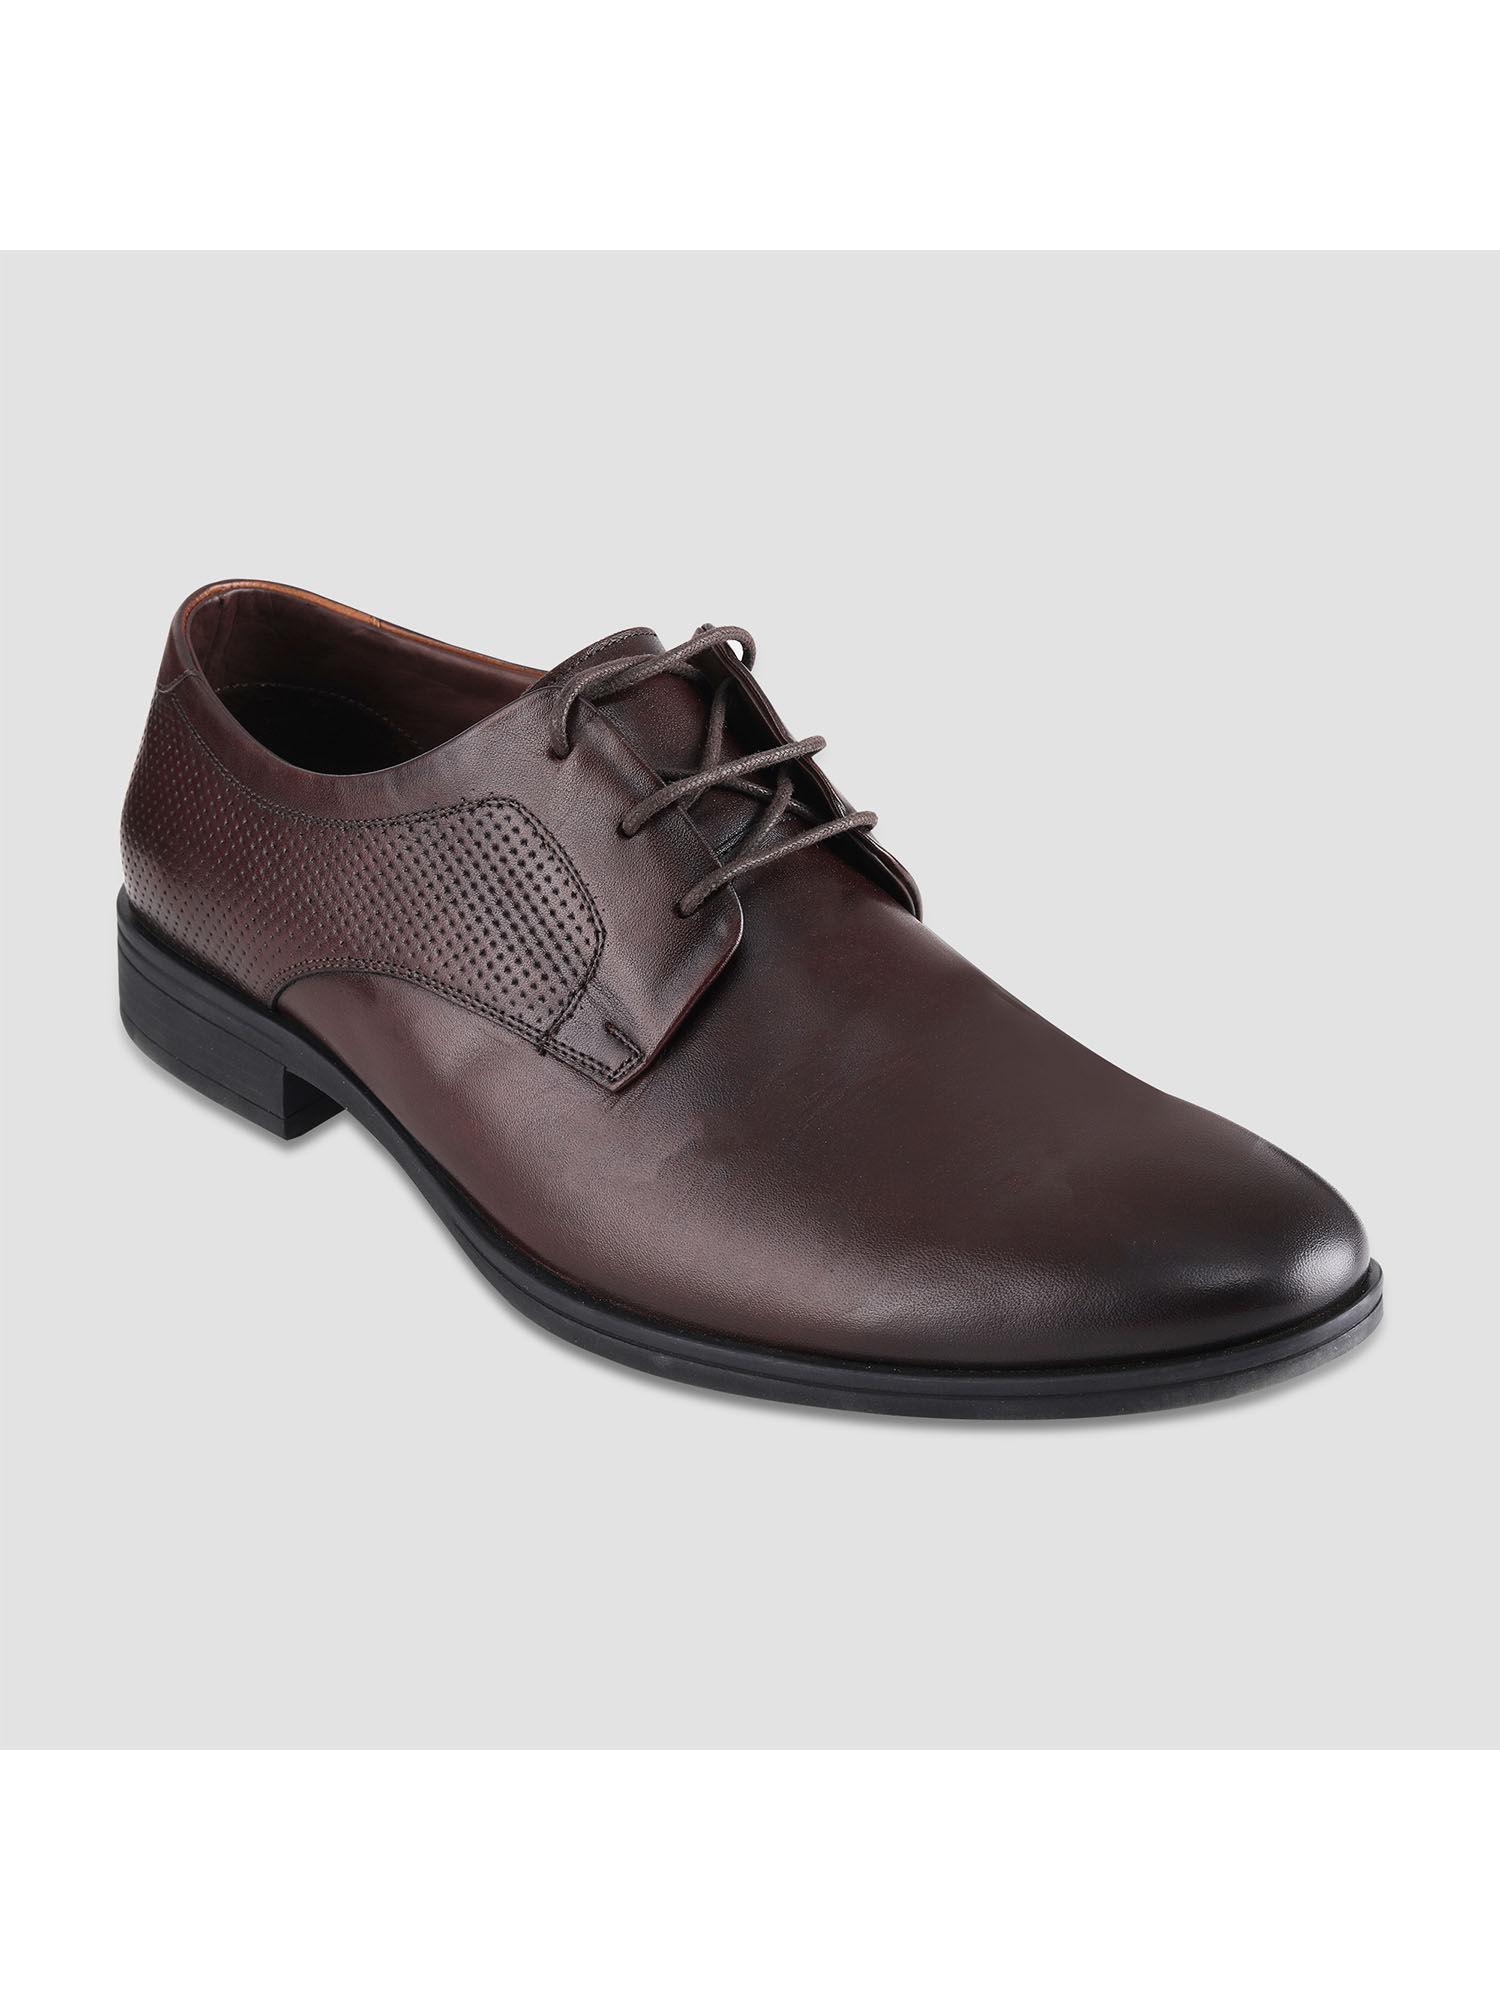 black leather formal shoes for men